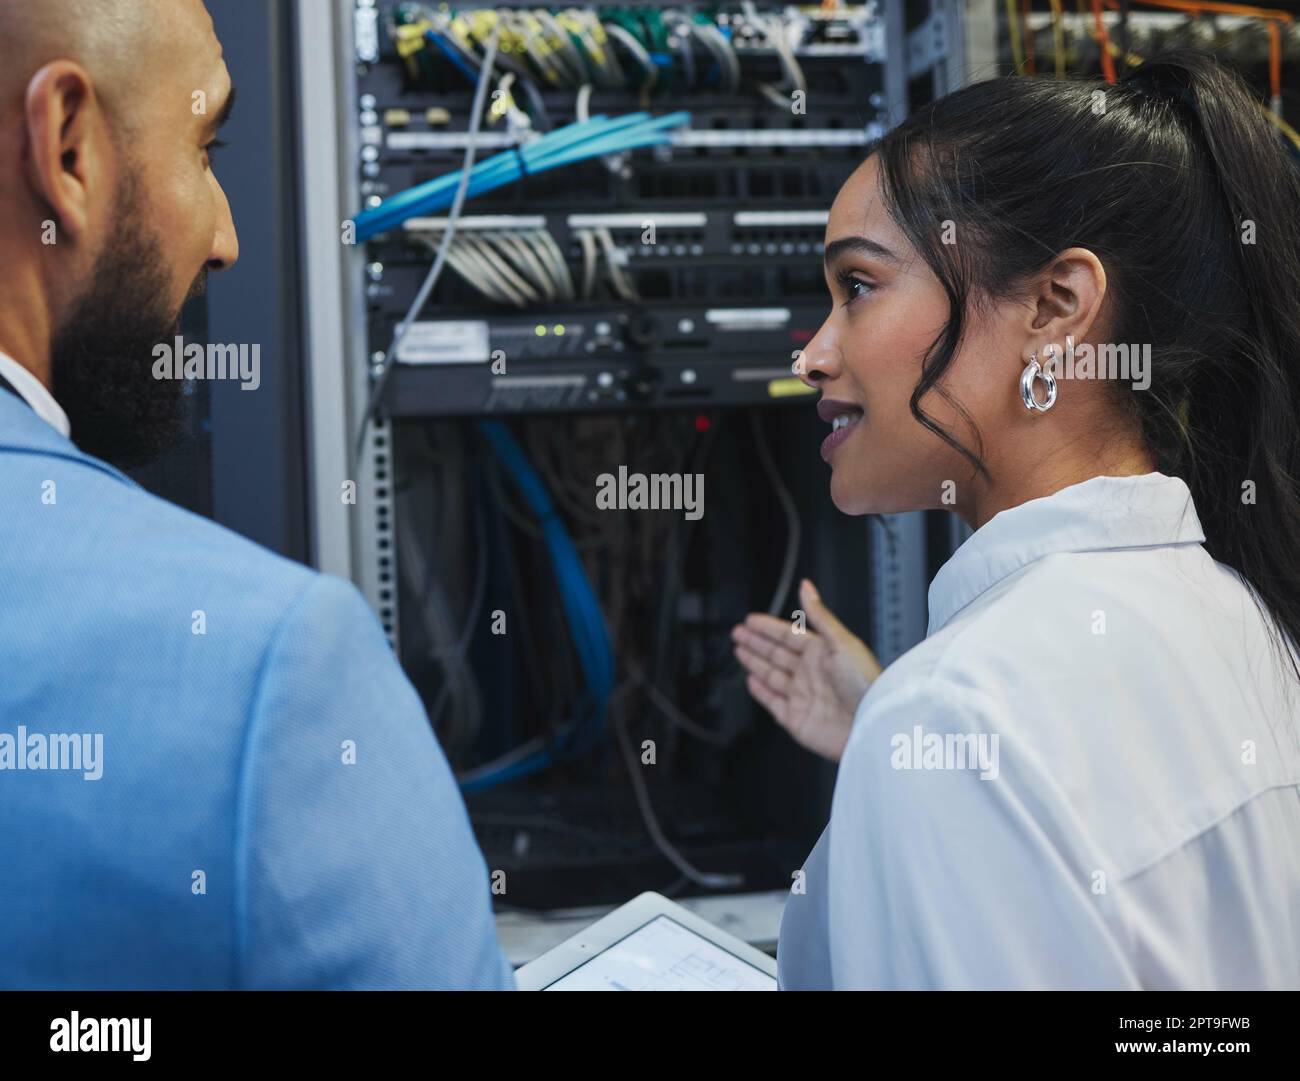 Verstehen wir uns? Zwei Mitarbeiter, die die elektronischen Geräte in einem Serverraum gemeinsam bei der Arbeit inspizieren Stockfoto